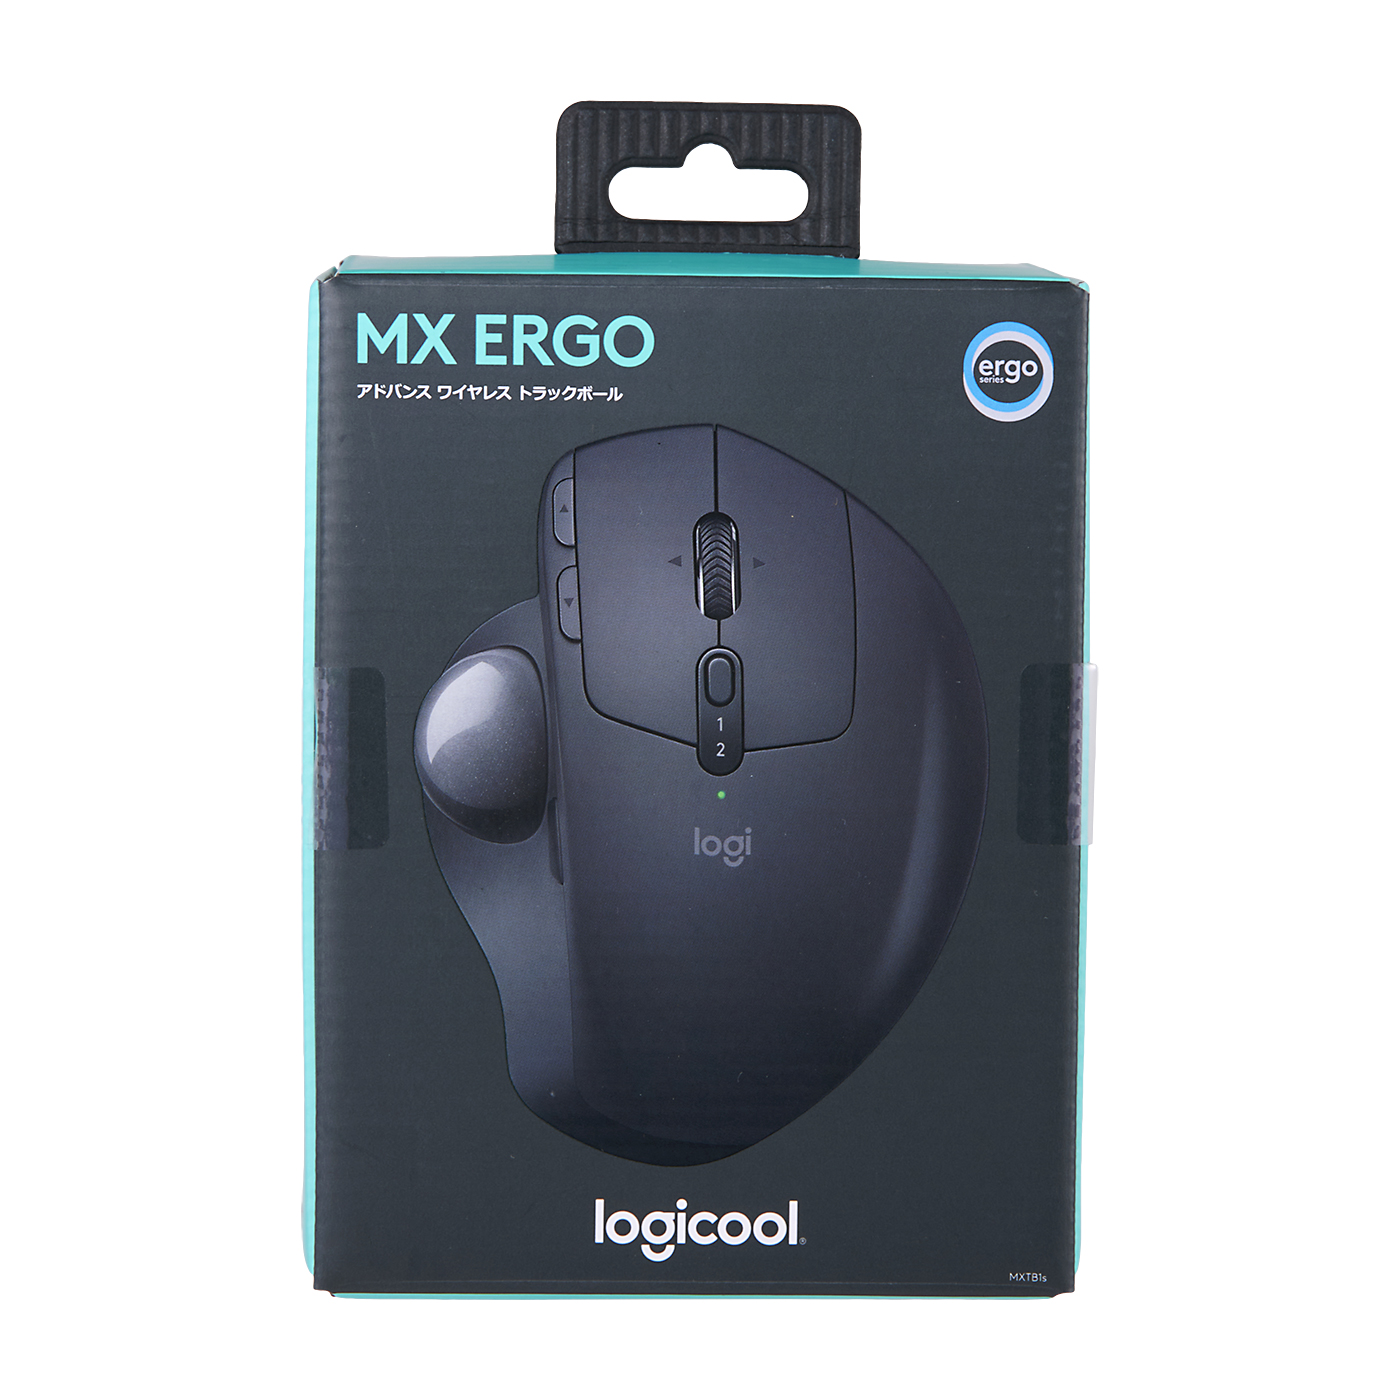 お得豊富なMX ERGO Logicool MXTB1S マウス・トラックボール